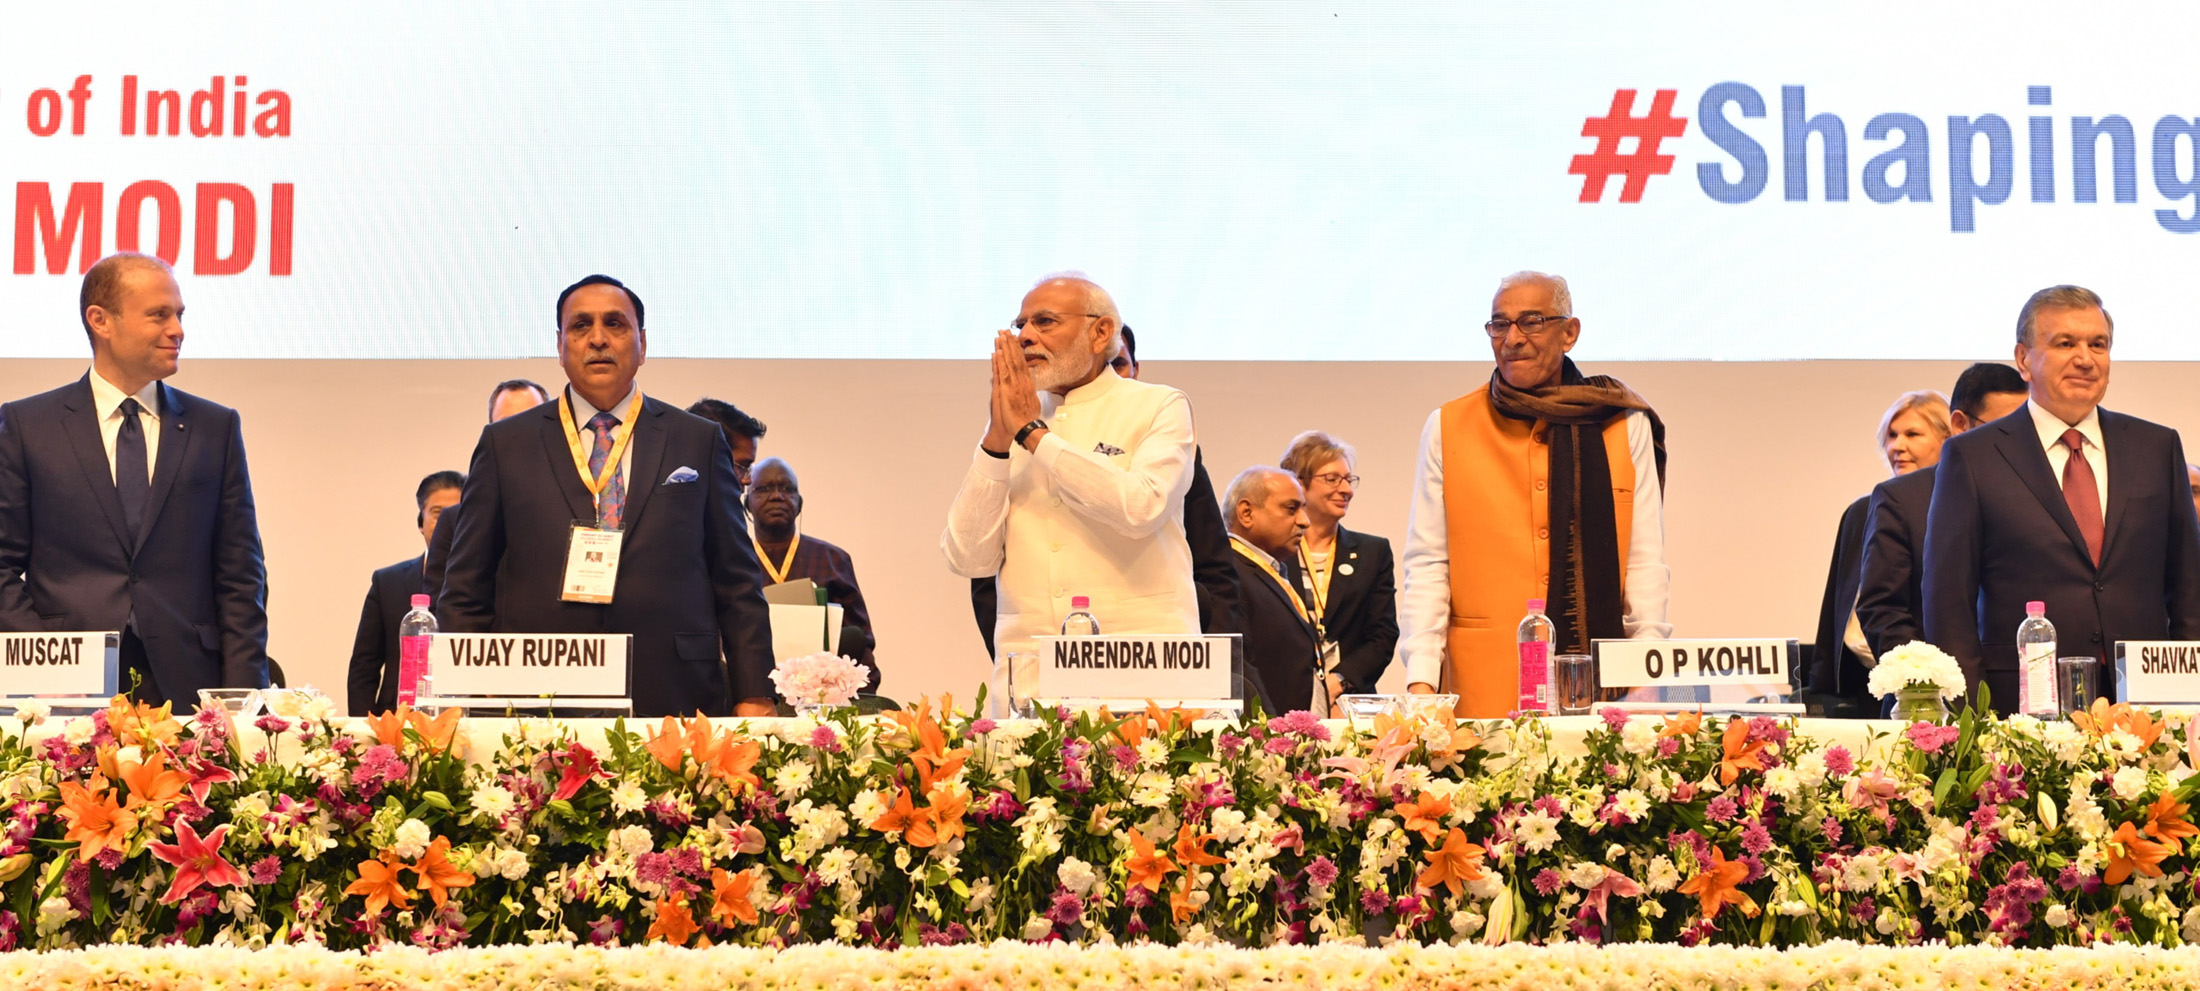 Narendra Modi inaugurates Ninth Edition of Vibrant Gujarat Summit in Gandhinagar